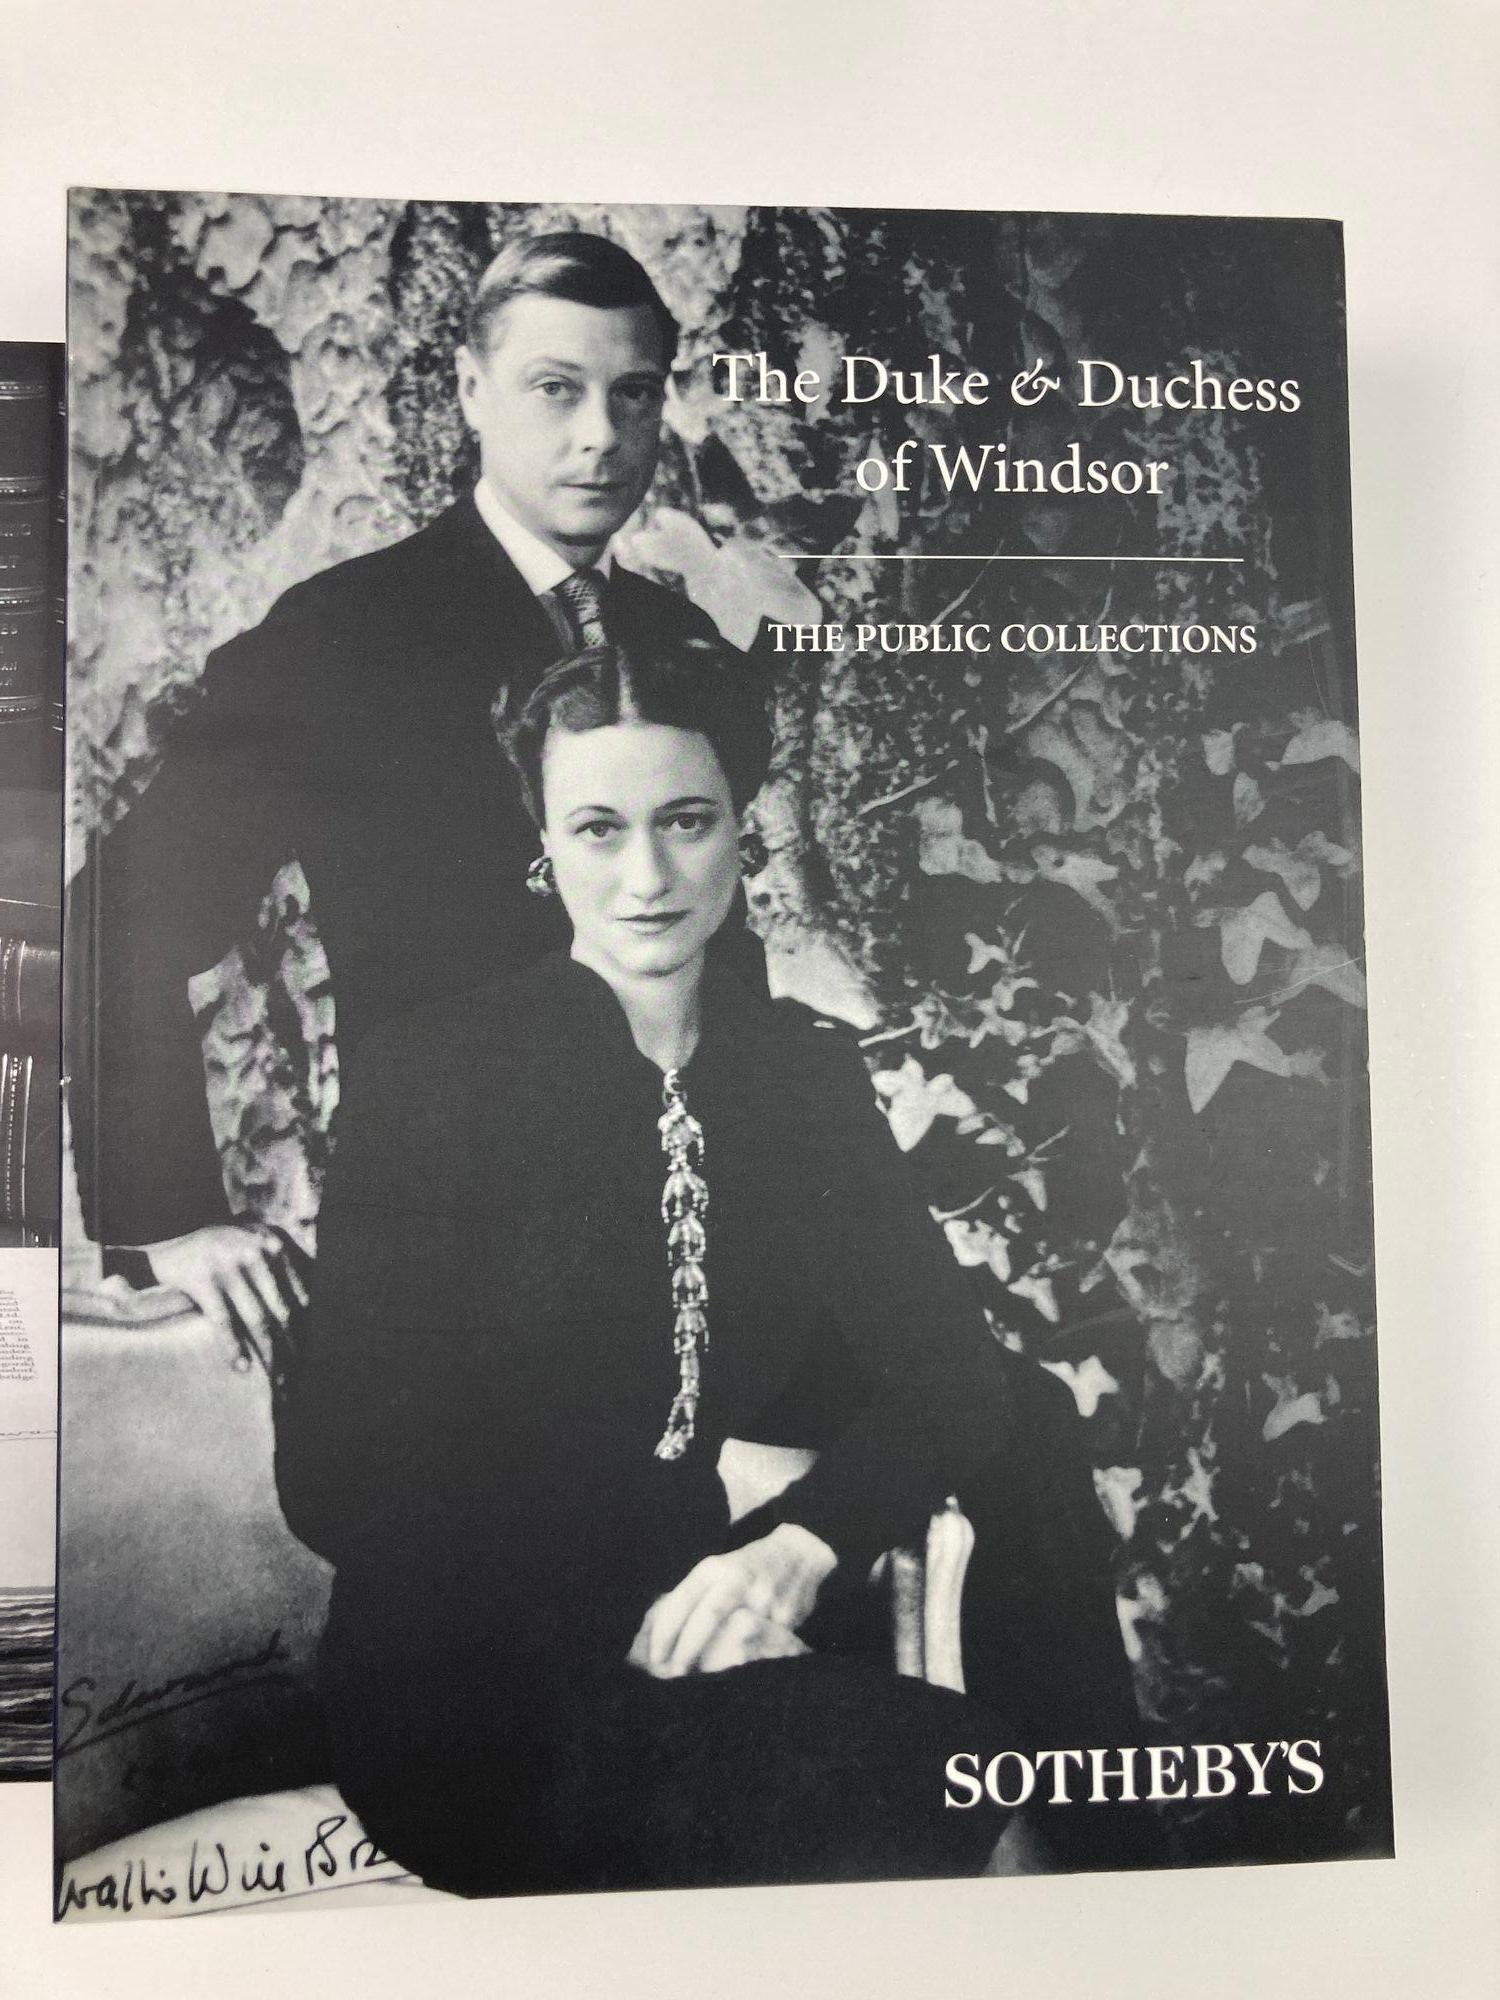 The Duke and Duchess of Windsor Auction Sotheby's Books Catalogs in Slipcase Box (Le duc et la duchesse de Windsor, ventes aux enchères, catalogues de livres de Sotheby's dans une boîte) en vente 2